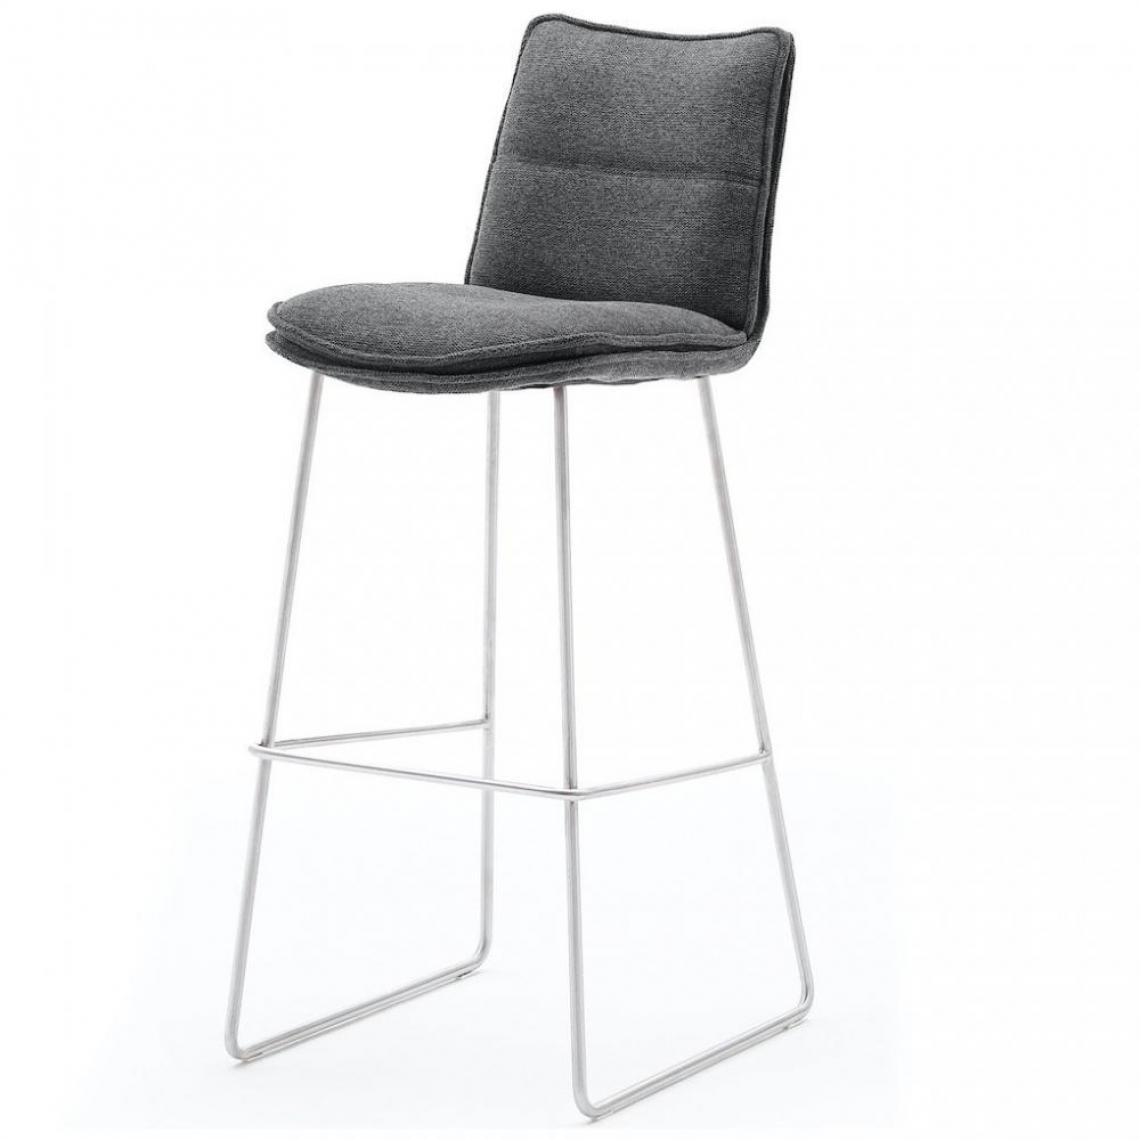 Inside 75 - Lot de 2 chaises de bar design HALSOU tissu anthracite et pieds acier brossé - Chaises